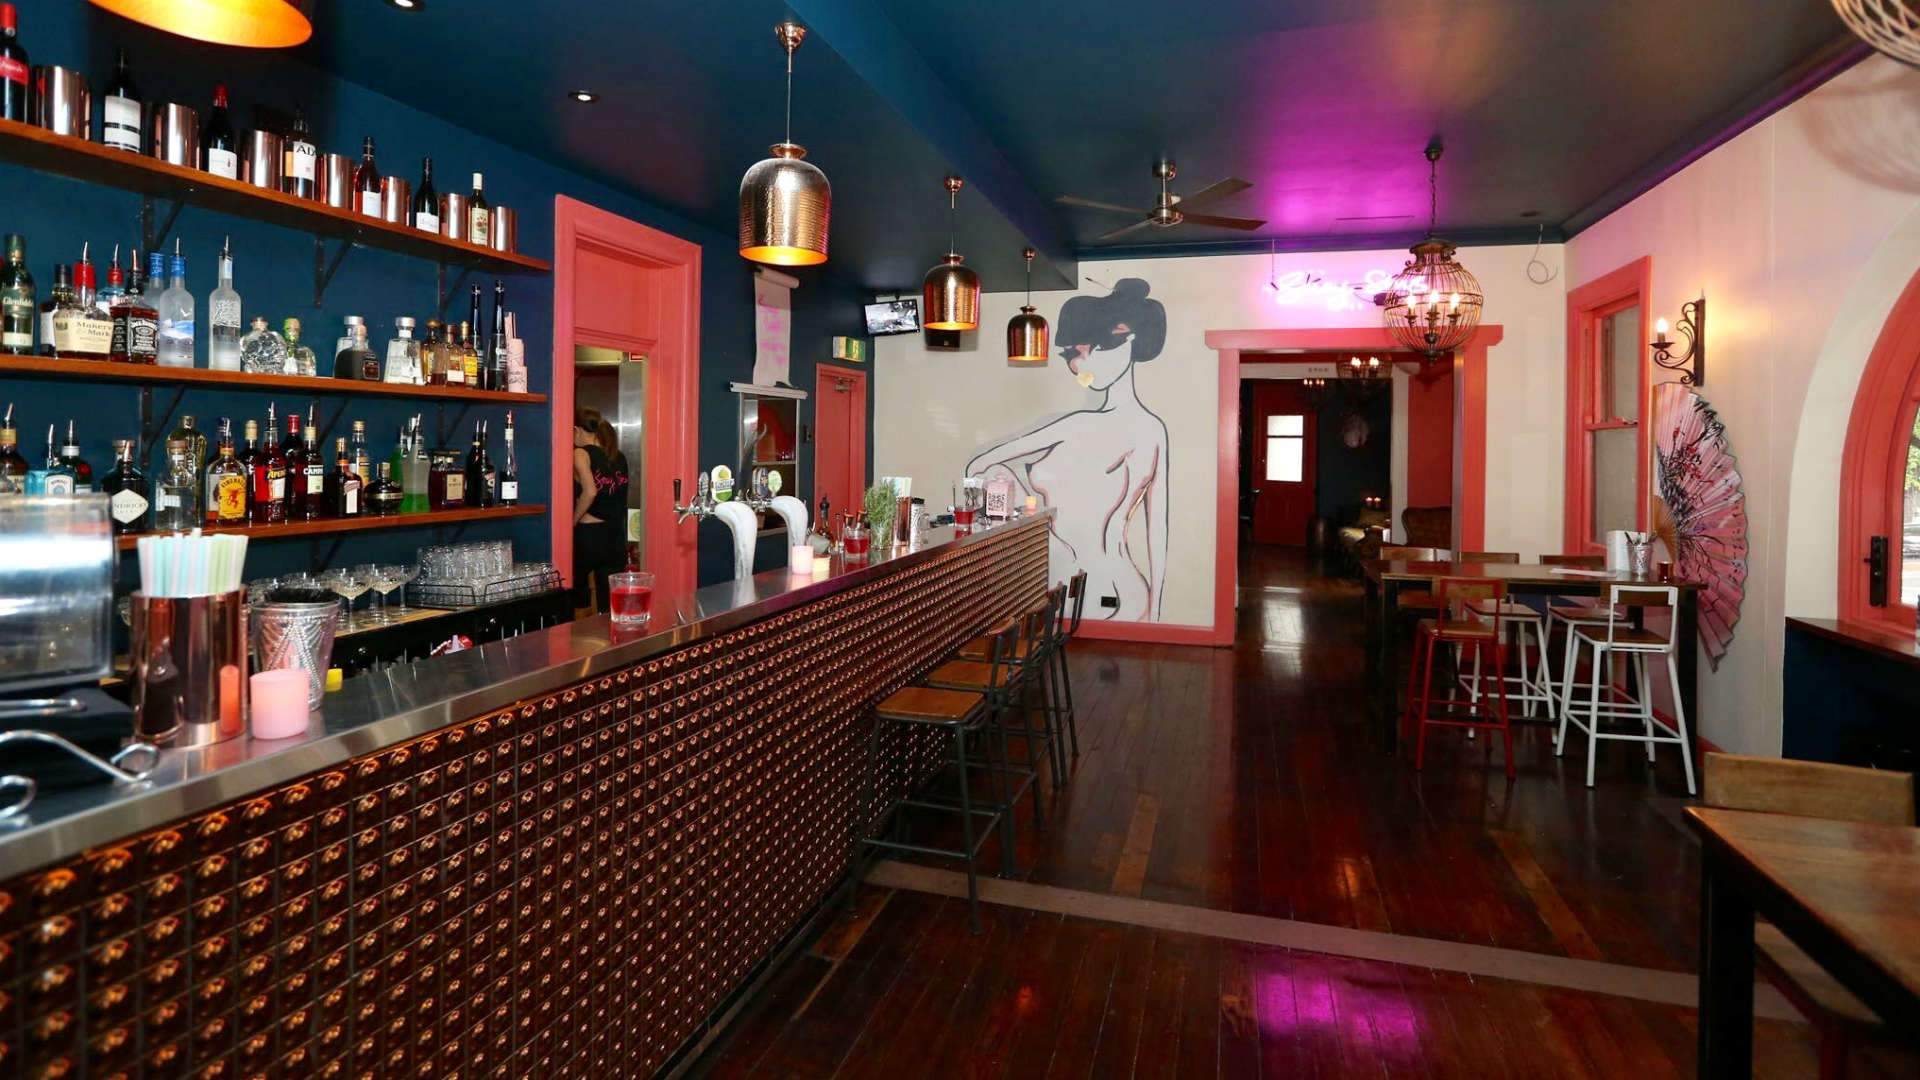 Sydney's "Sexy Pre-War Shanghai" Bar Suey Sins Publicly Slammed for Cultural Appropriation